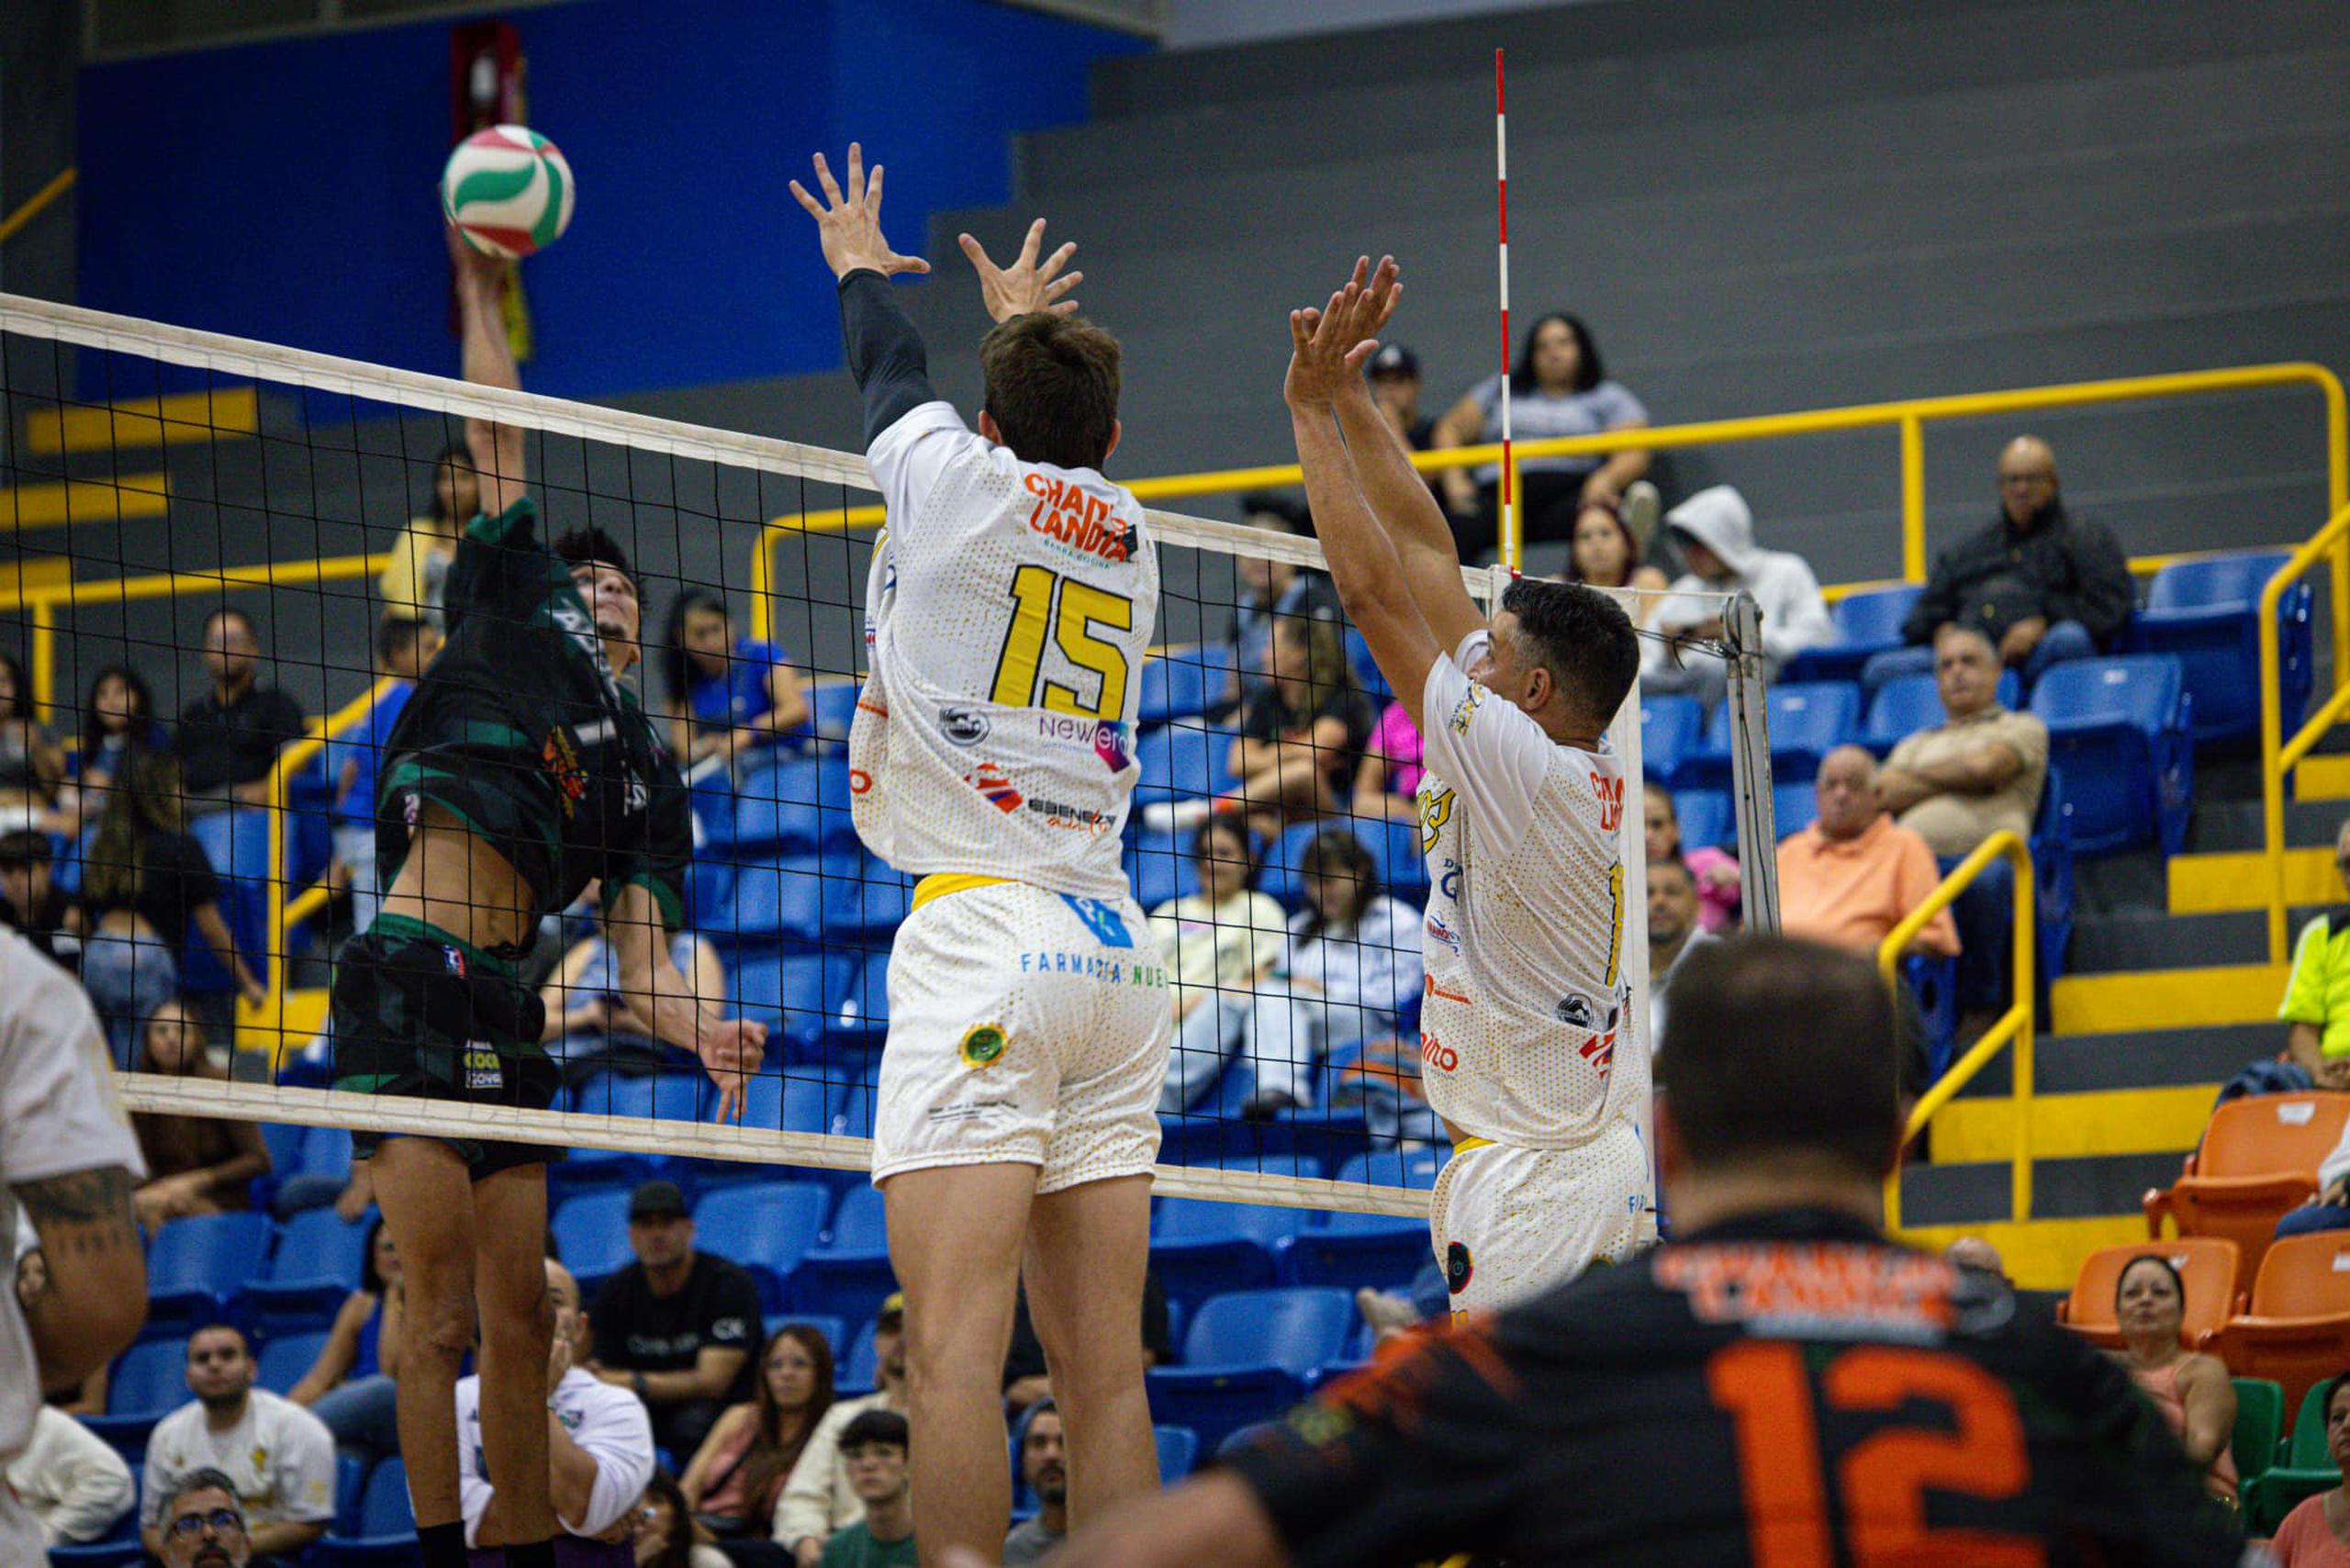 Los actos más recientes que han provocado la orden de parte de la Federación Puertorriqueña de Voleibol sucedieron el sábado.